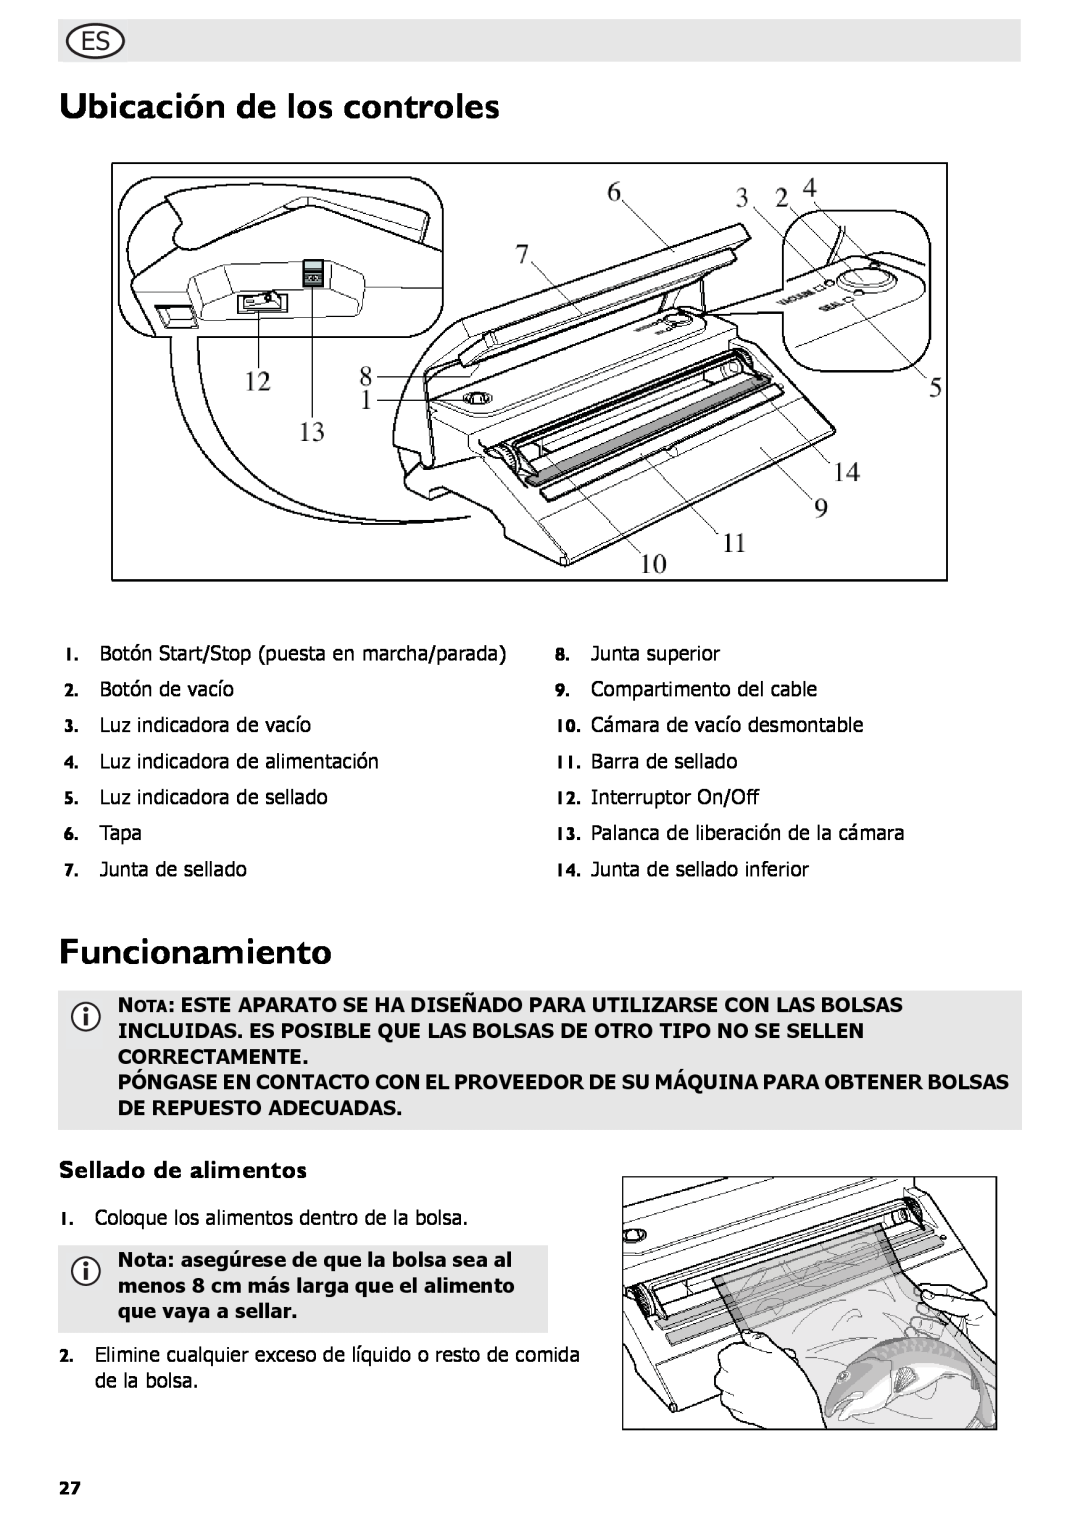 Buffalo Tools S097 instruction manual Ubicación de los controles, Funcionamiento, Sellado de alimentos 